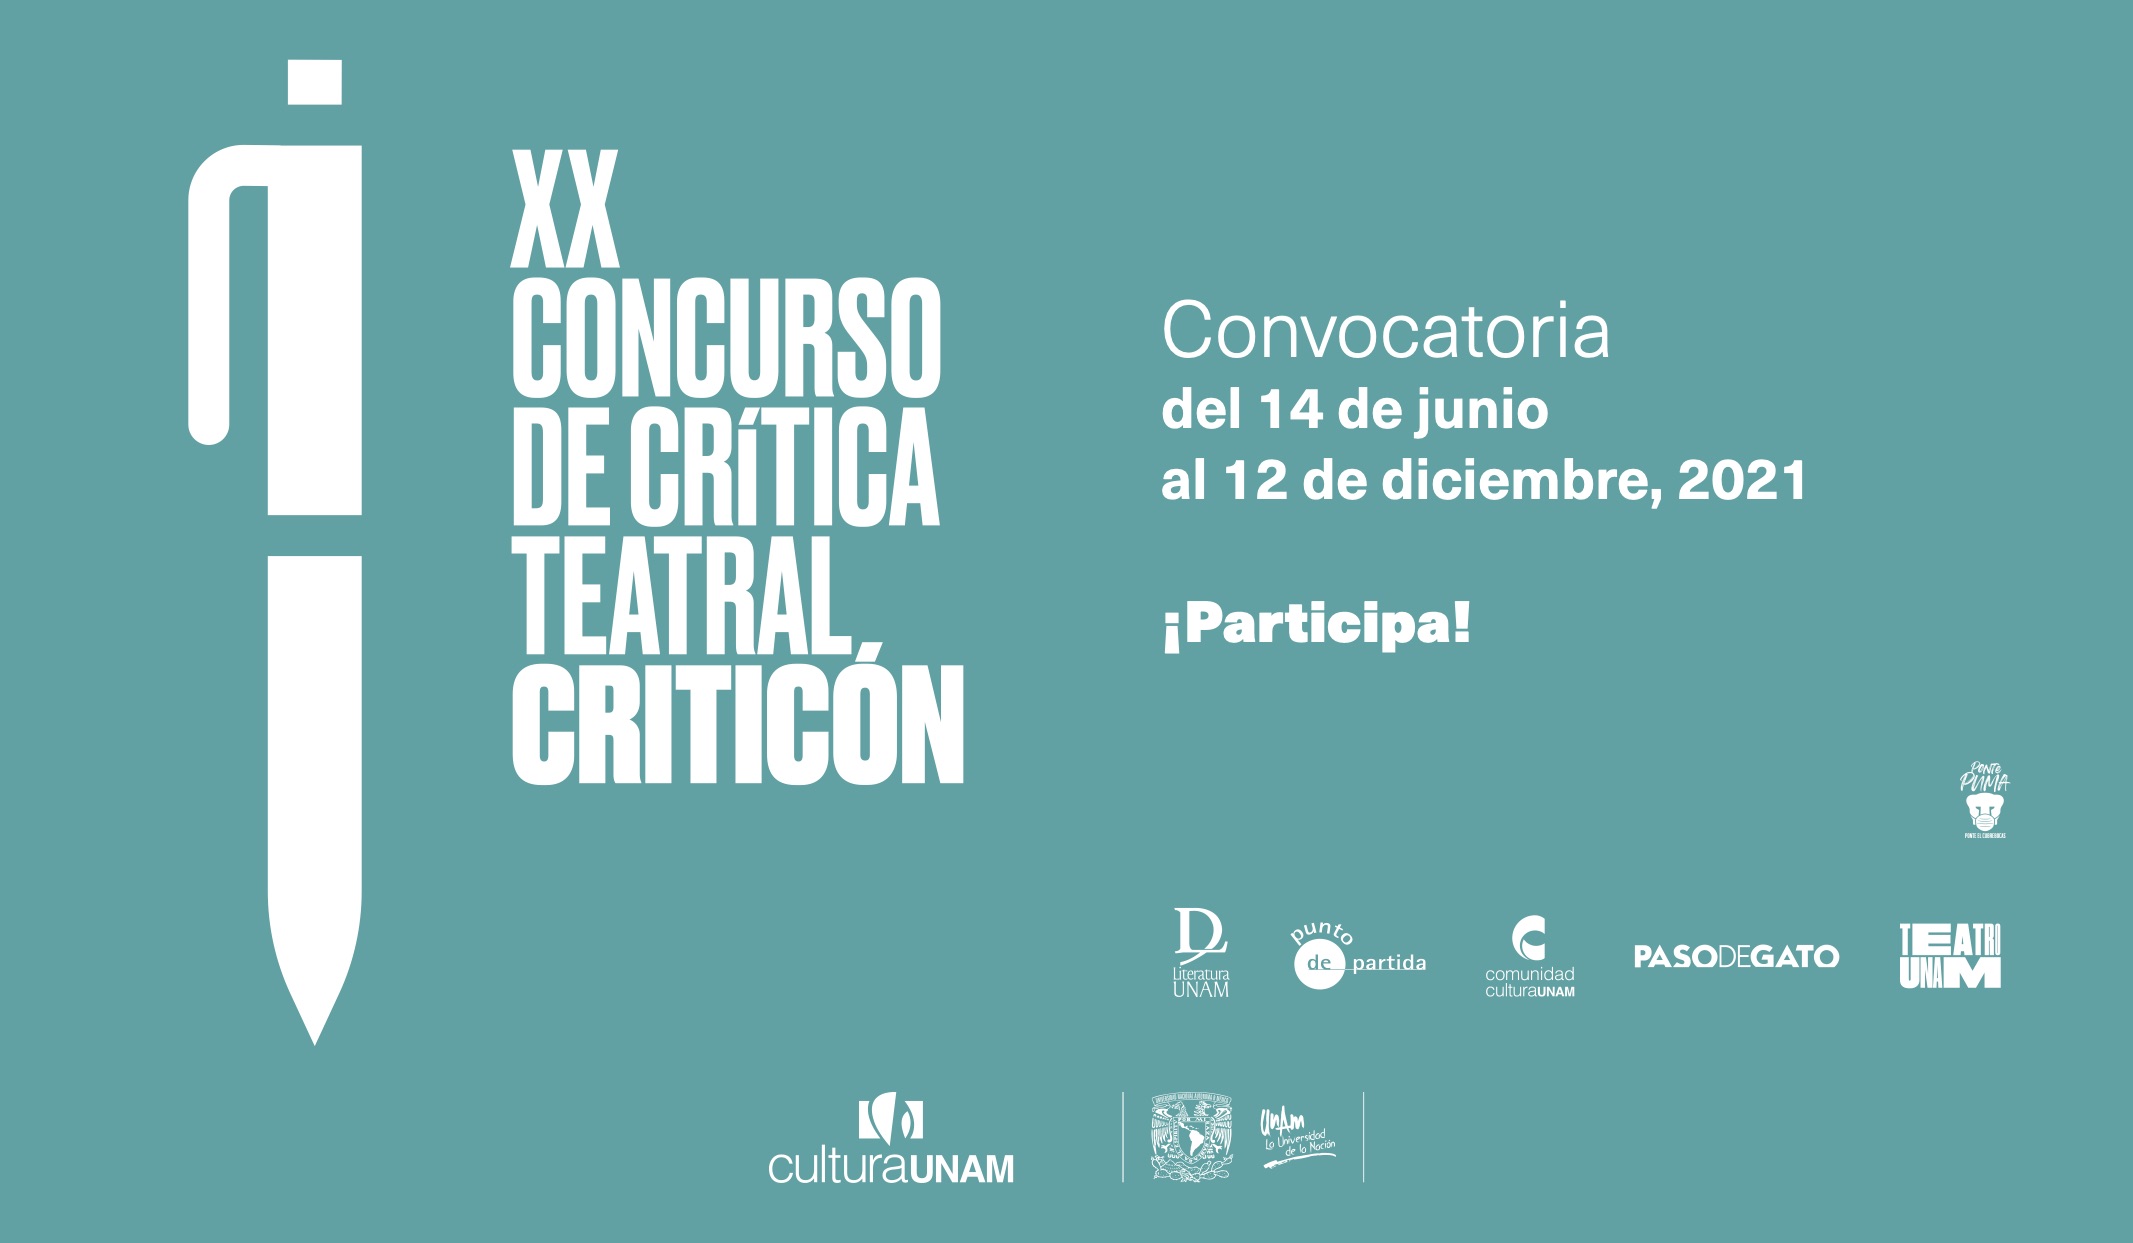 XX Concurso de Crítica Teatral Criticón